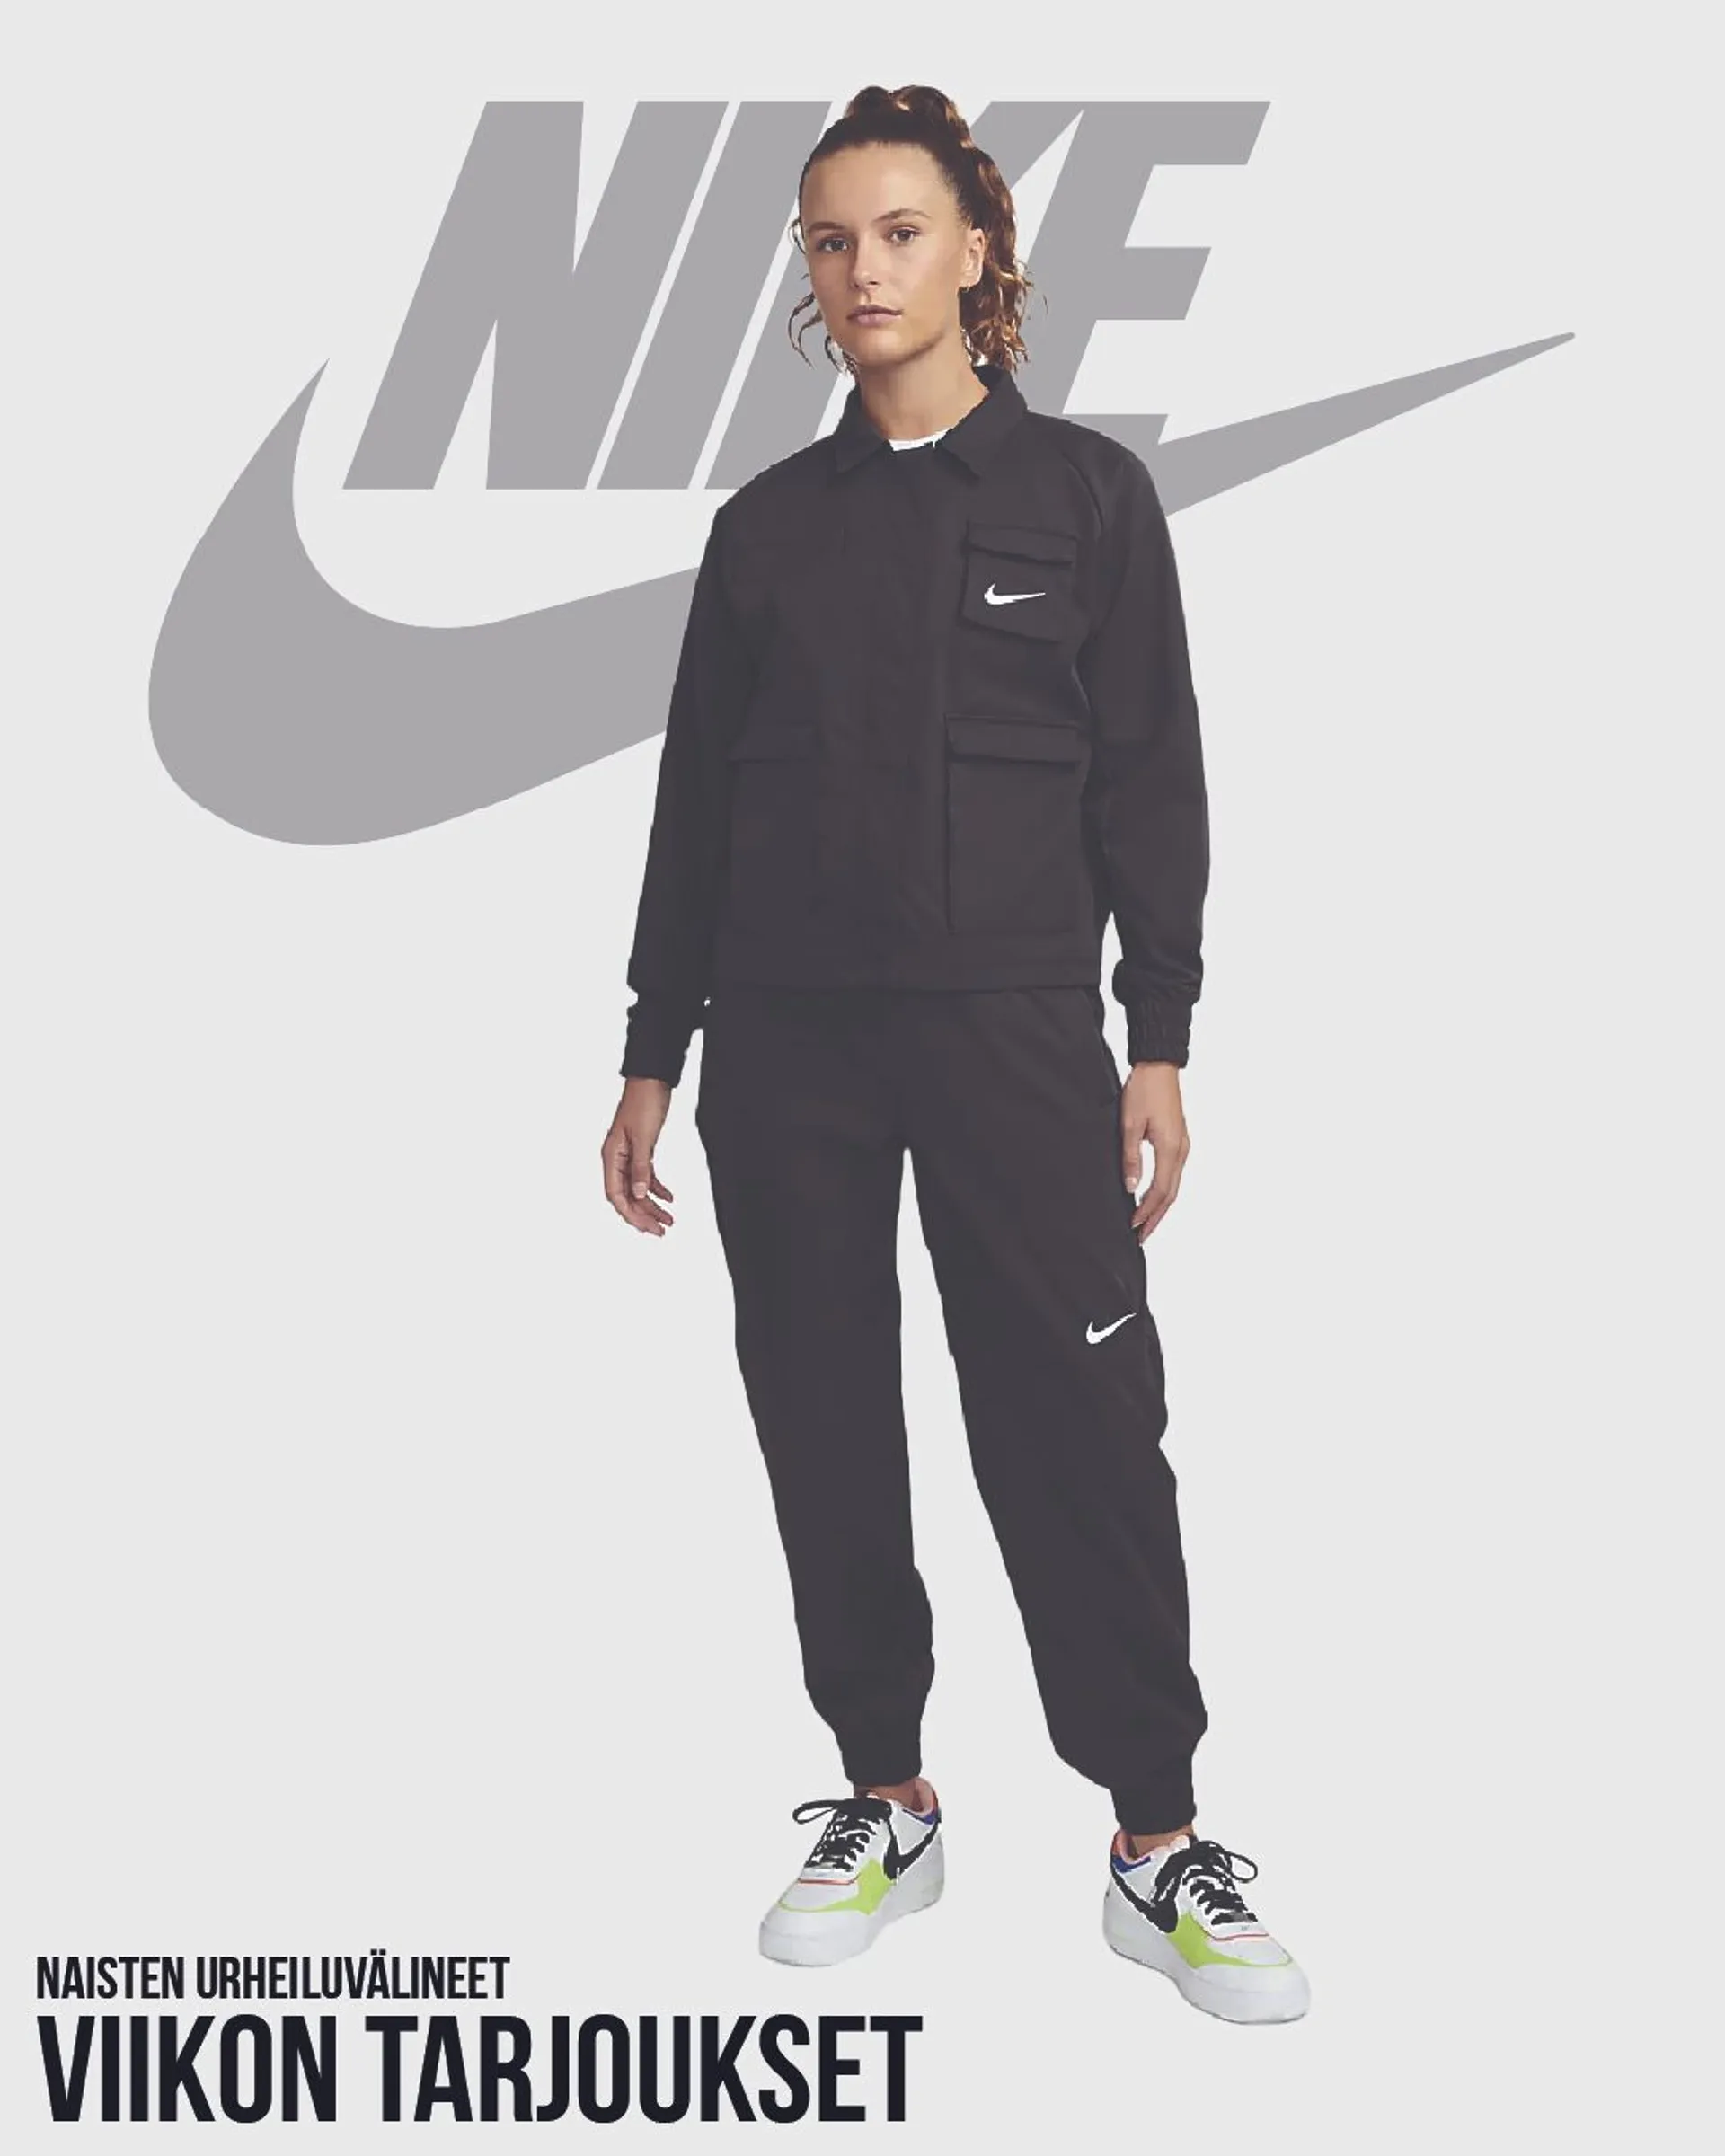 Nike - Naisten urheiluvälineet voimassa alkaen 16. toukokuuta - 21. toukokuuta 2024 - Tarjouslehti sivu 